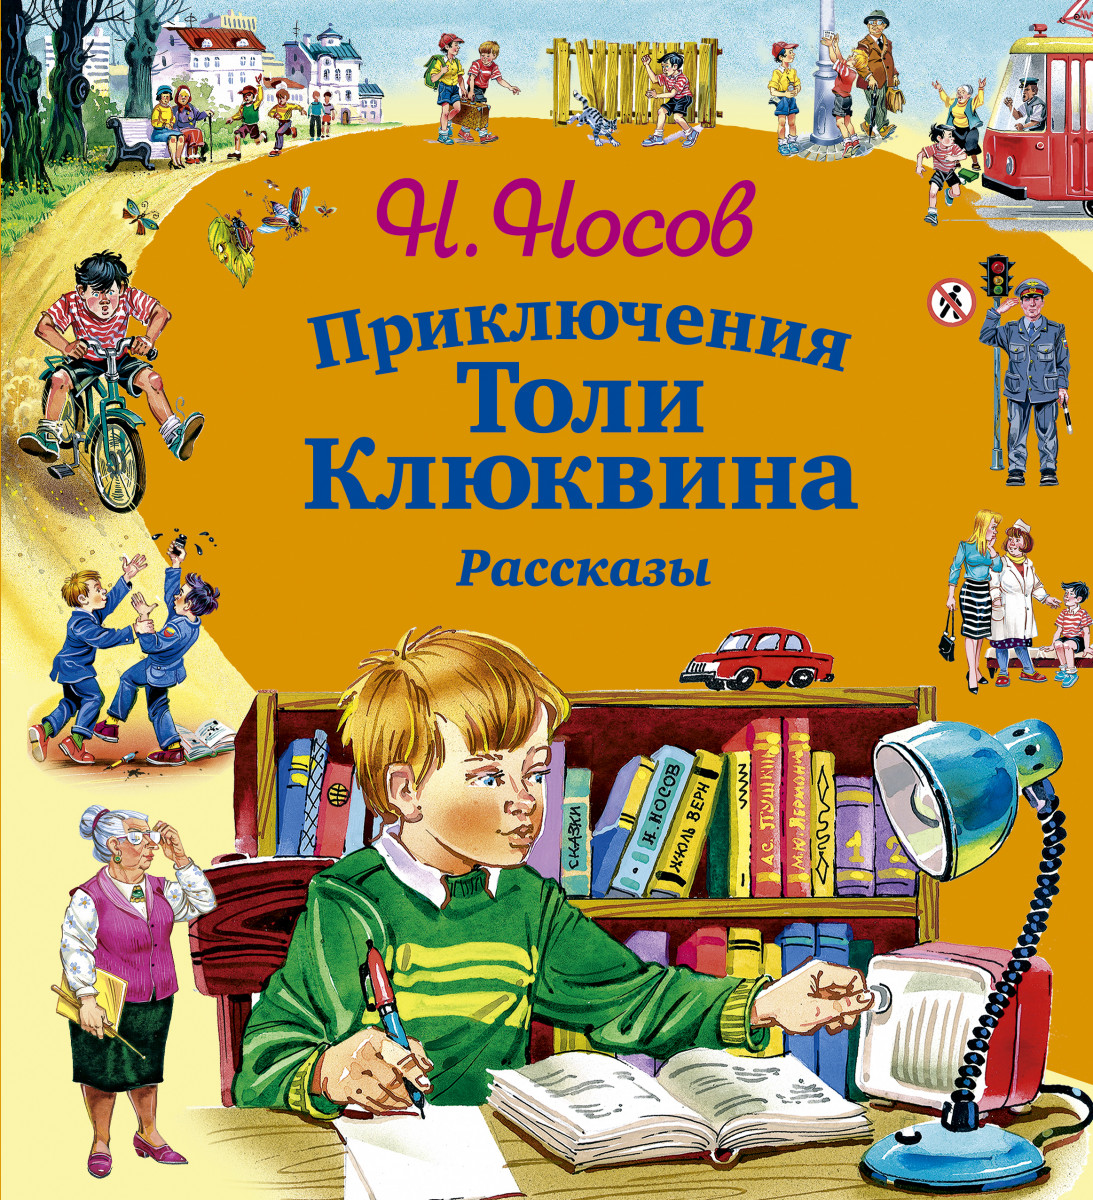 Детские произведения о детях. Приключения толи Клюквина н.н Носов 1961. Носов приключения толи Клюквина обложка.